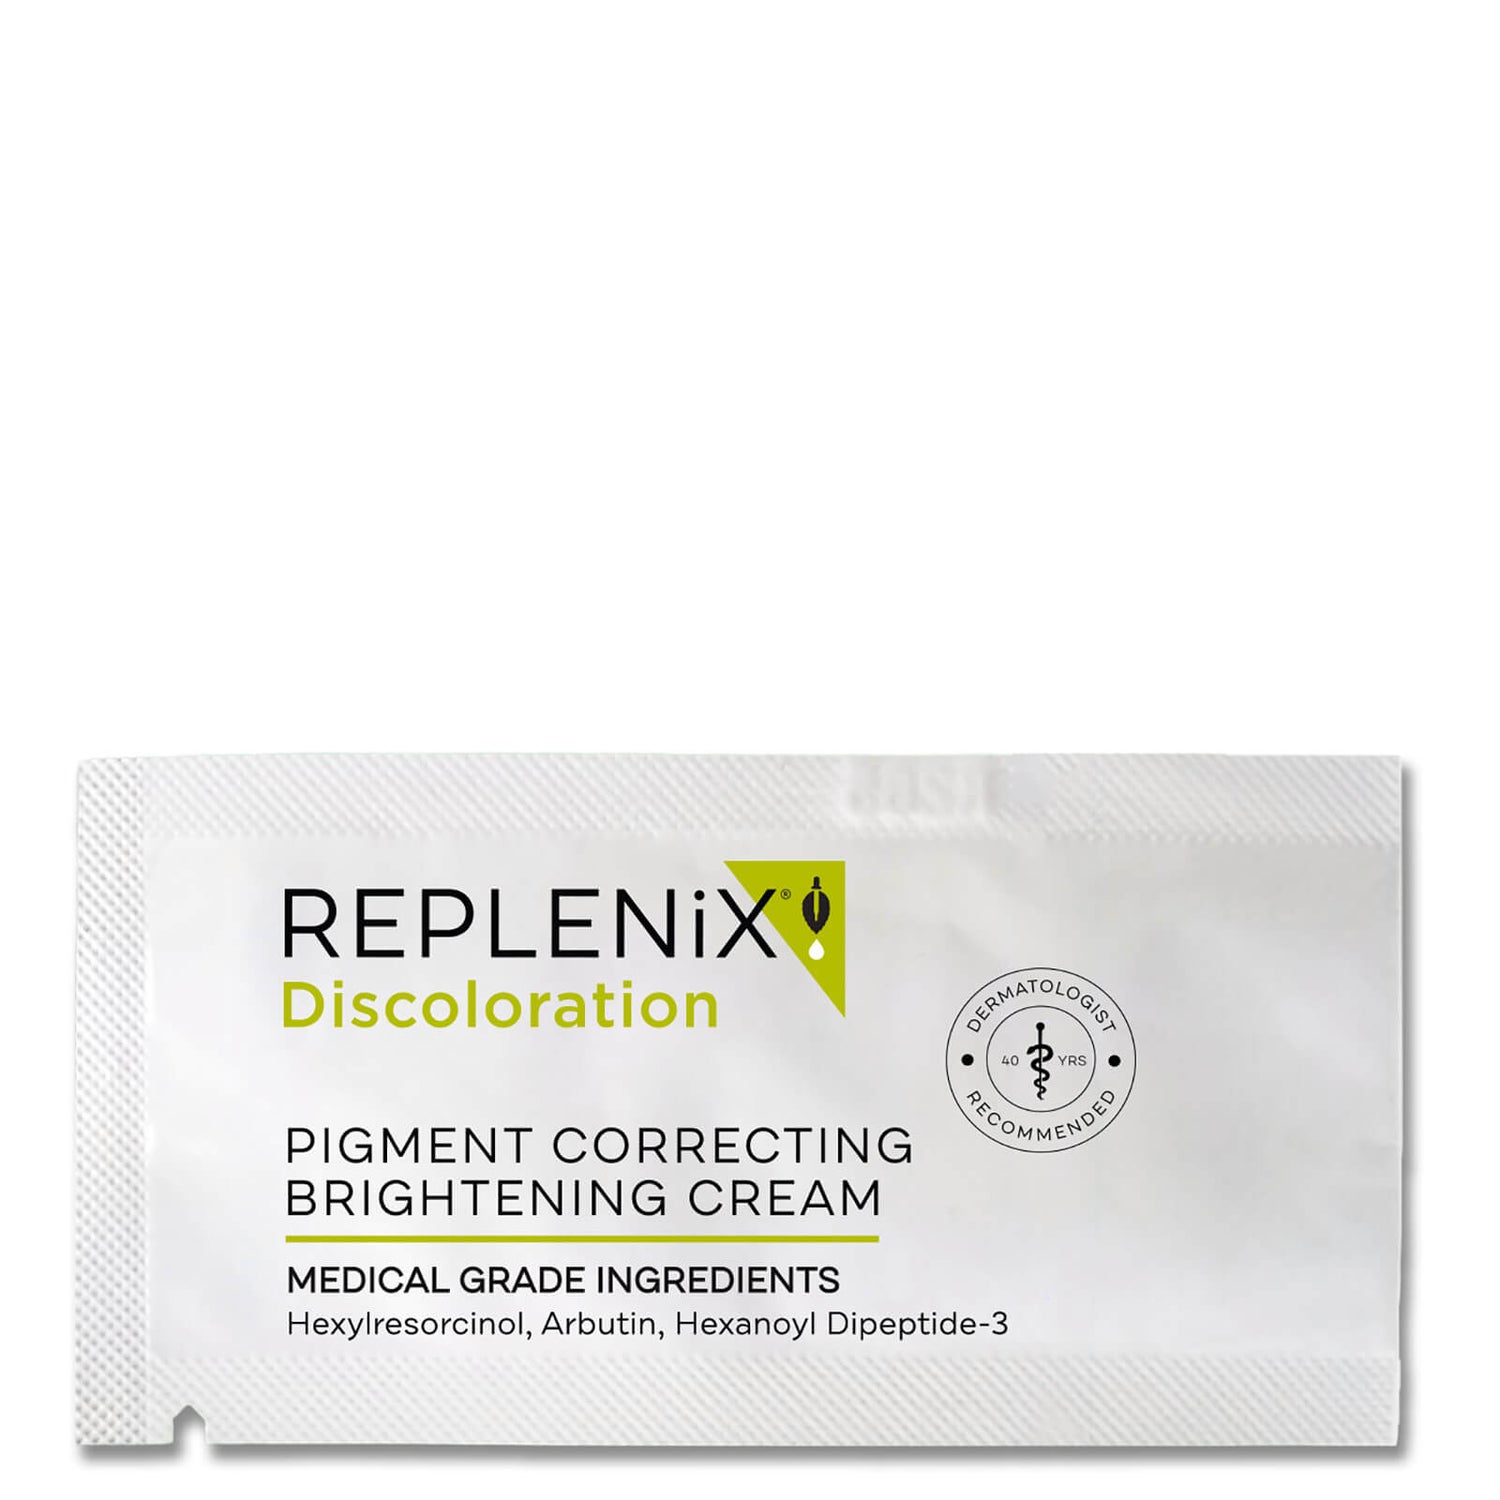 Replenix Pigment Correcting Brightening Cream